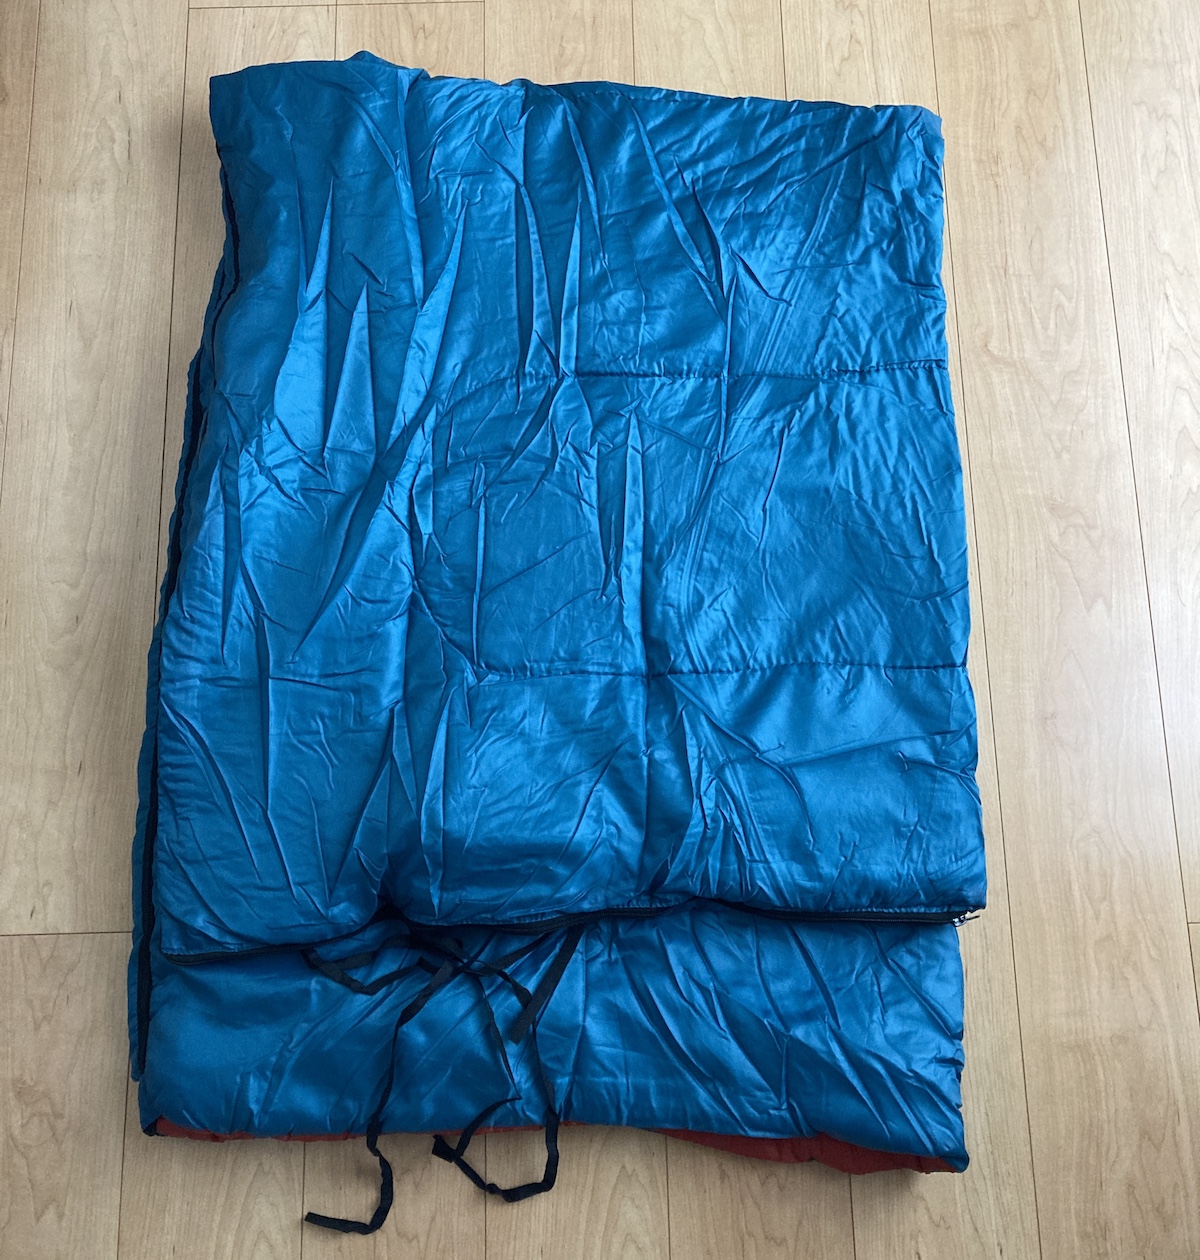 キャンプ用品】カインズで買った「1280円の寝袋」が最高に使える予感 